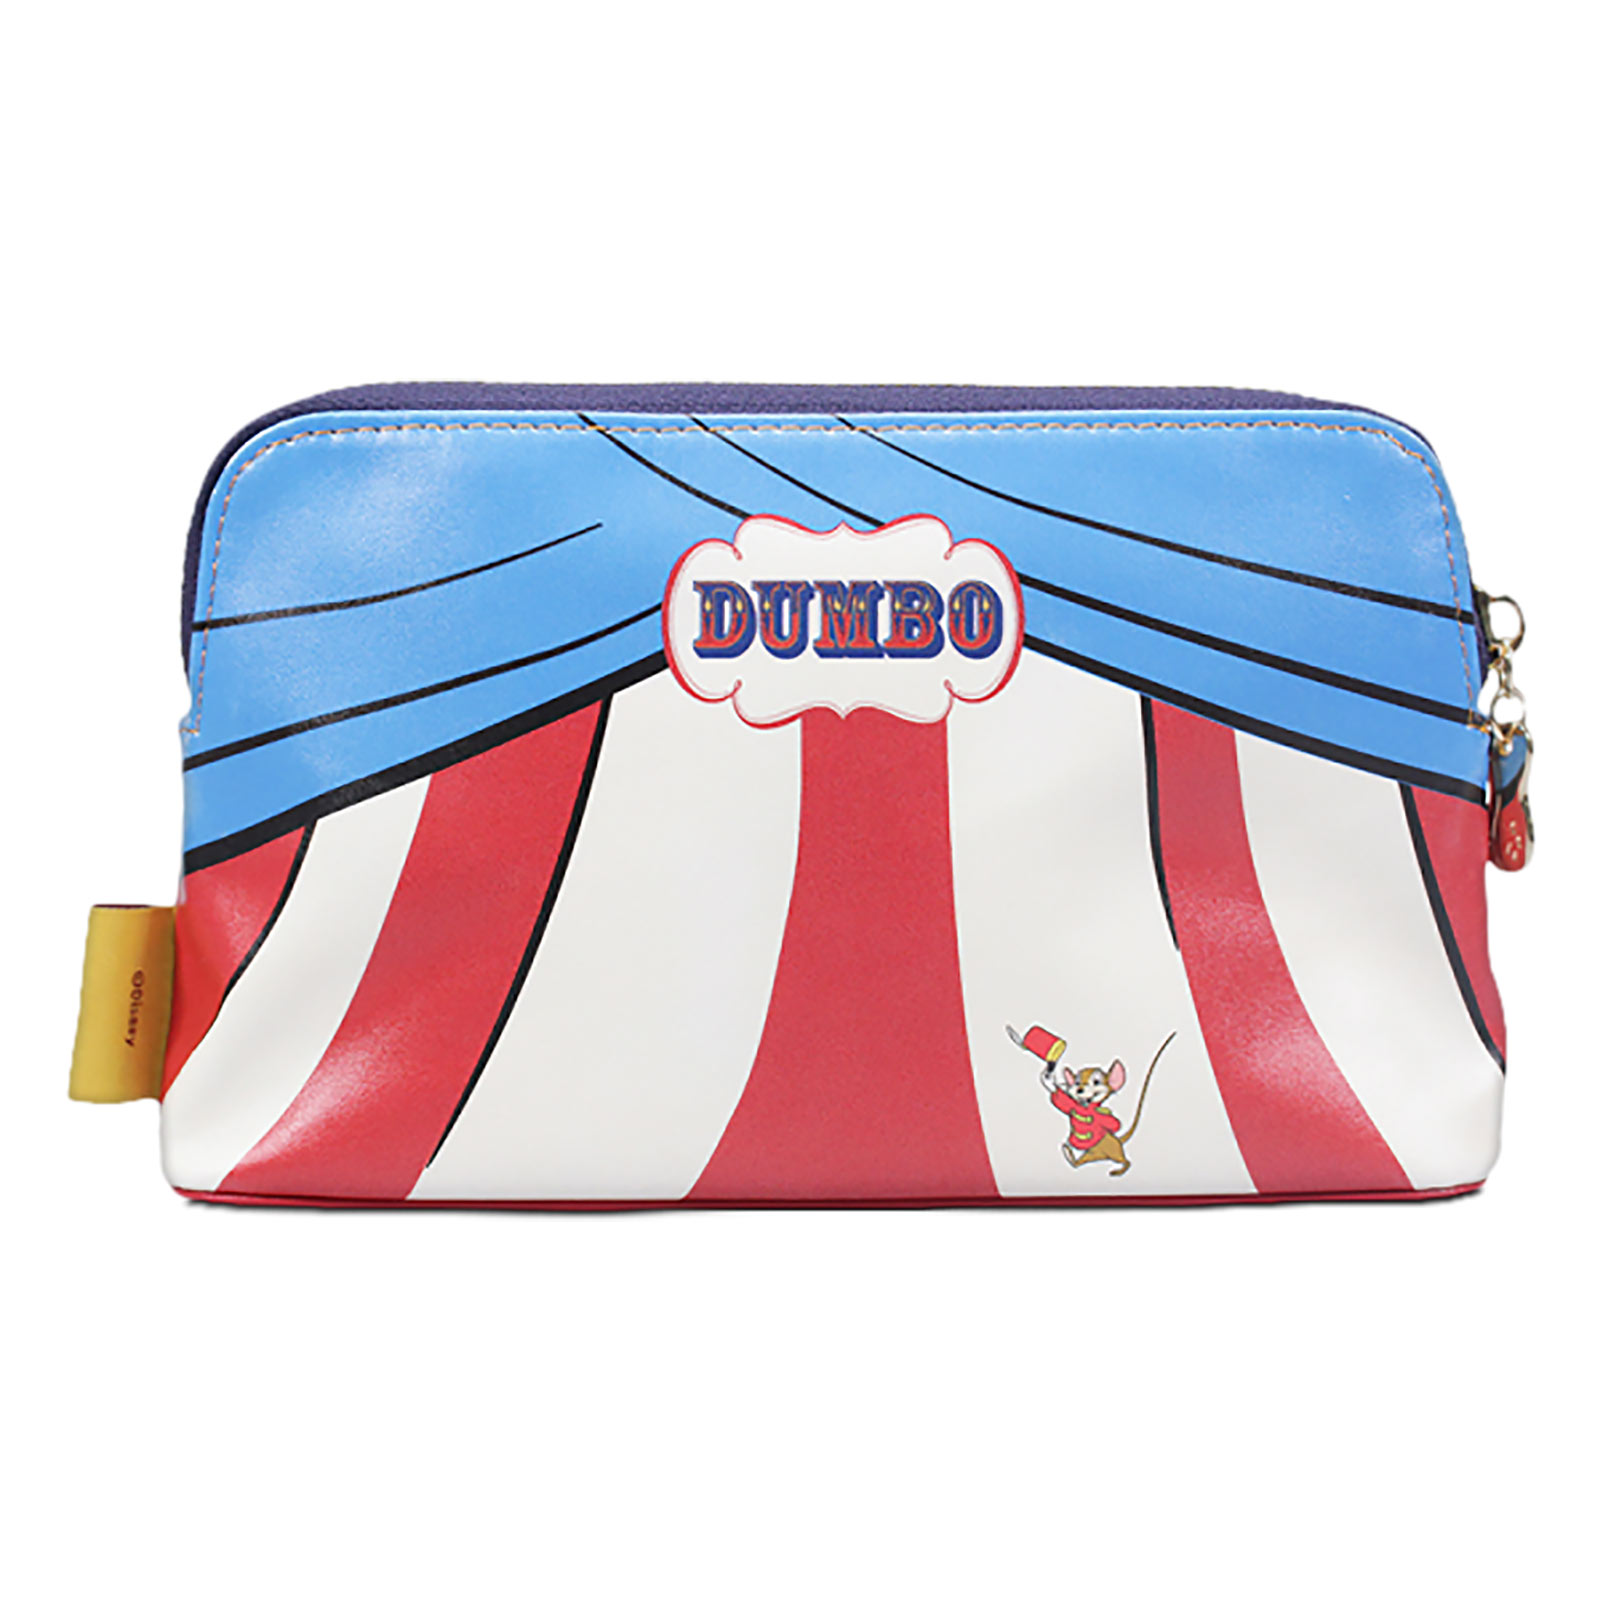 Dumbo - Circus Tent Cosmetic Bag